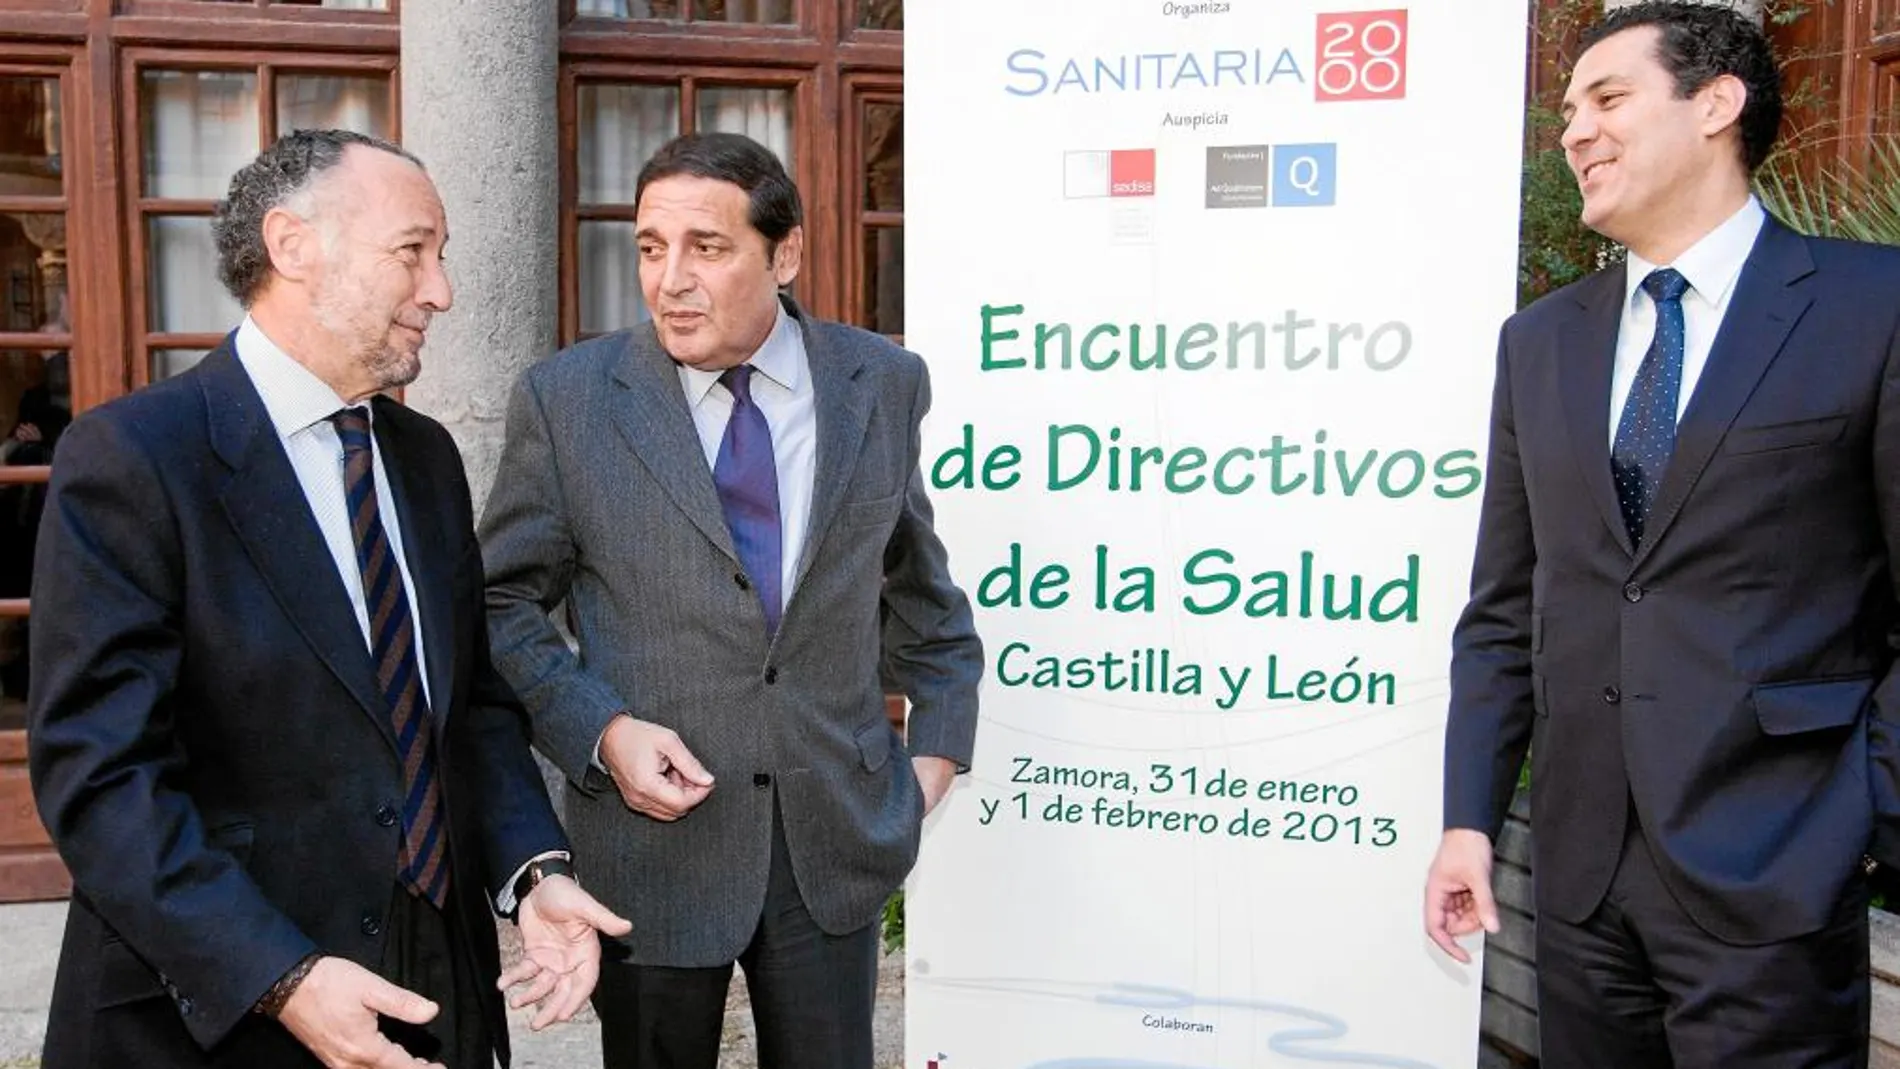 Antonio Sáez Aguado inaugura el Encuentro de directivos de la salud de Castilla y León, ayer en Zamora